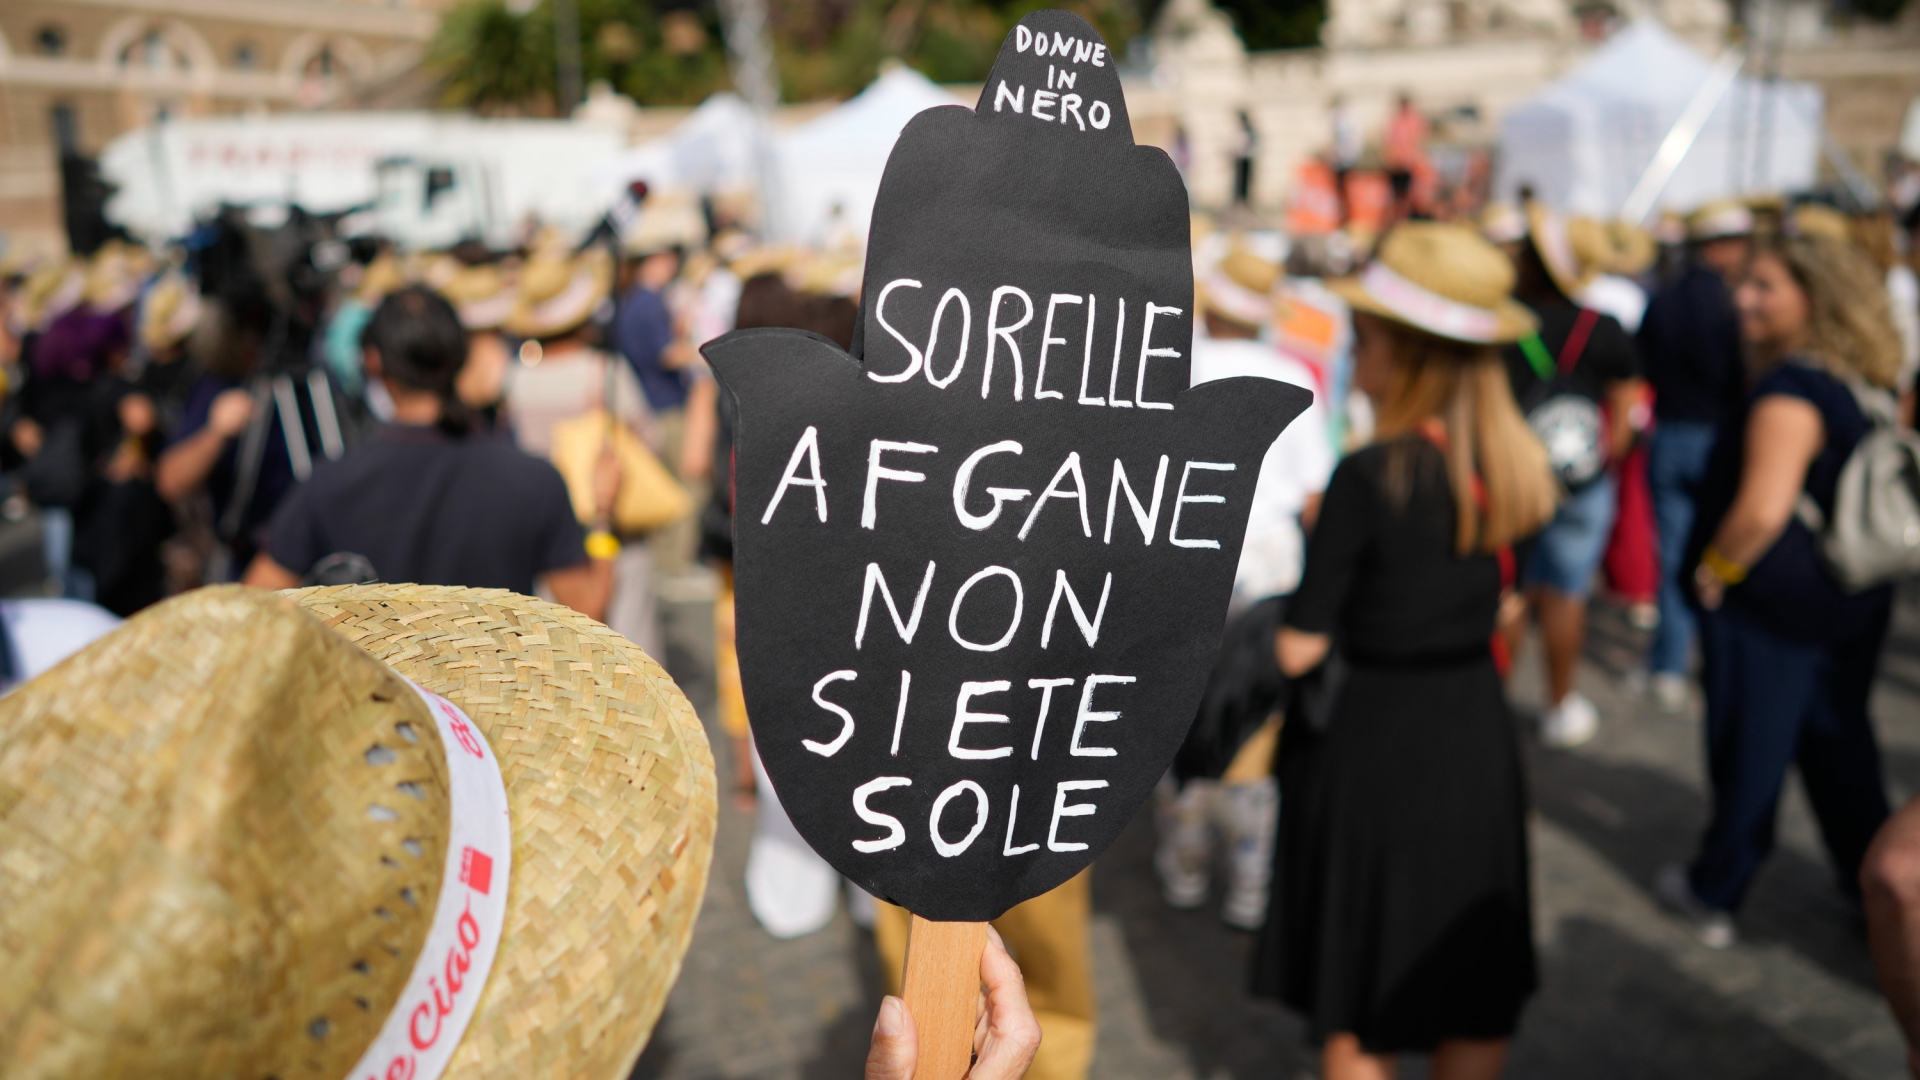 "Afghanische Schwestern, ihr seid nicht allein" steht auf einem Plakat, das eine Person auf einer Kundgebung für Afghanistan in Rom hochhält (Bild vom 25.09.2021). | AP